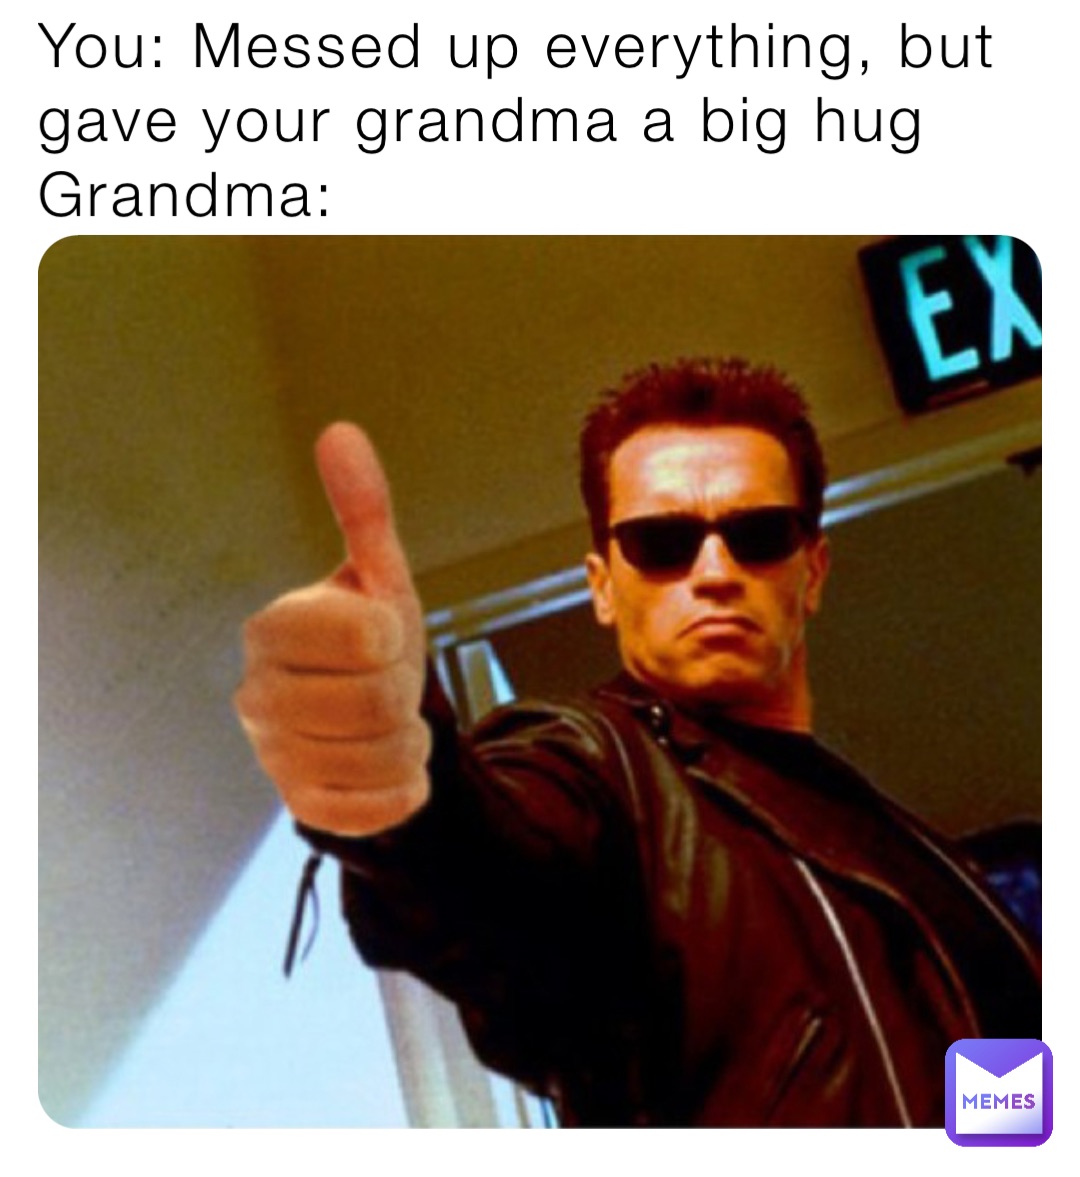 You: Messed up everything, but gave your grandma a big hug
Grandma: